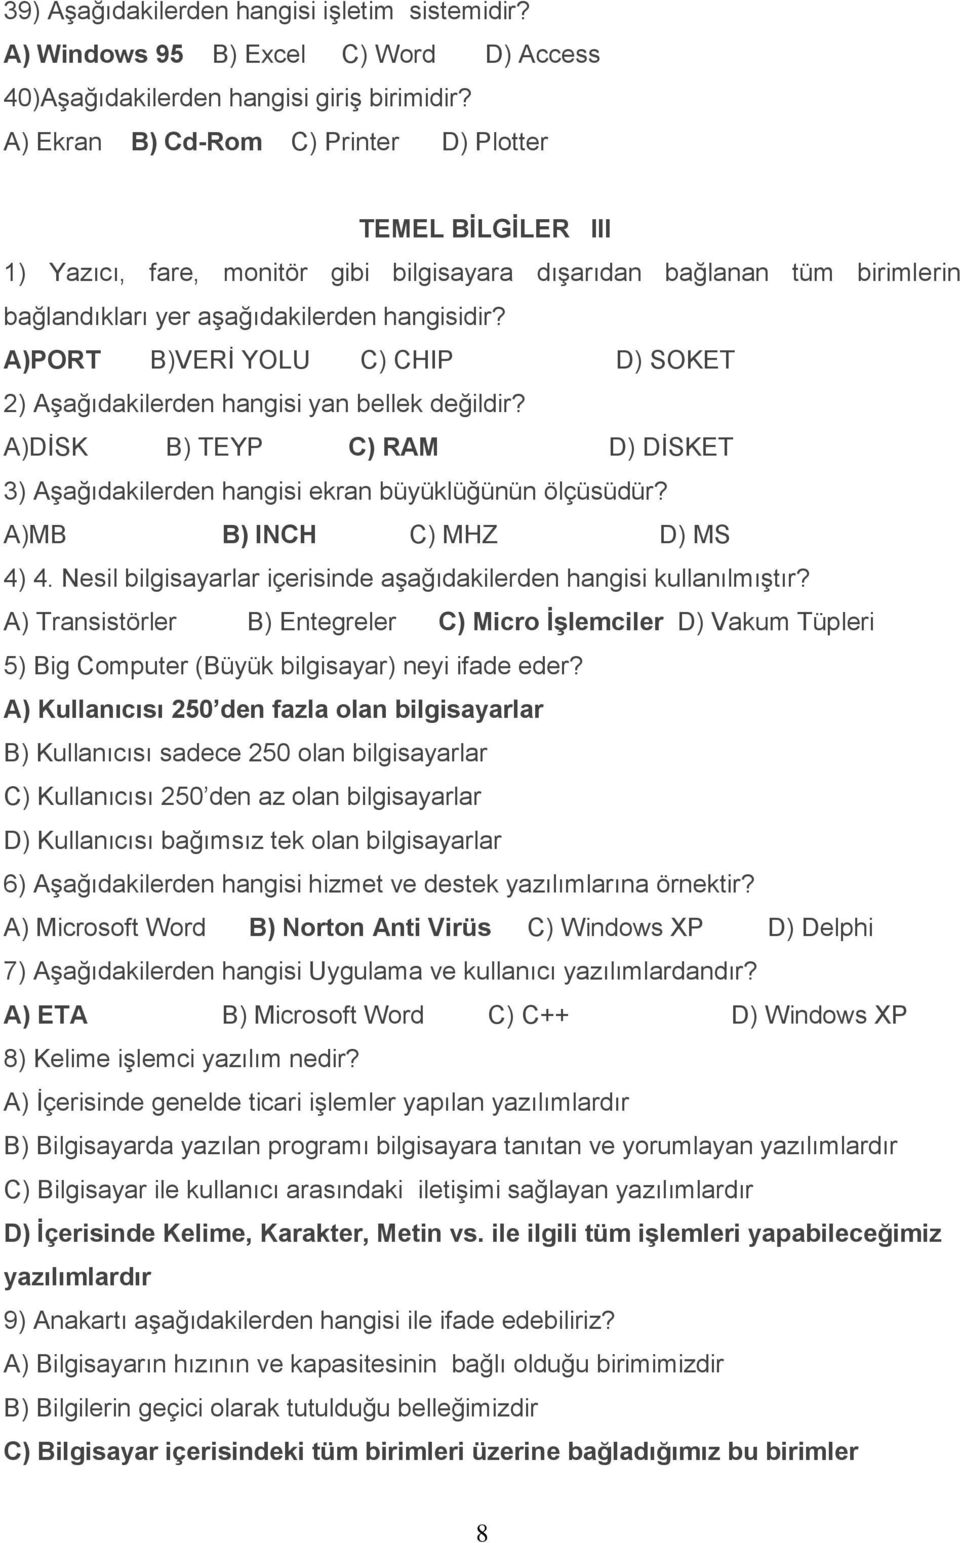 Örnek Bilgisayar Soruları TEMEL BİLGİLER I 1) Bilgisayar sisteminde en  küçük hafıza birimi aşağıdakilerden hangisidir? A) Byte B) Gigabyte C) -  PDF Free Download